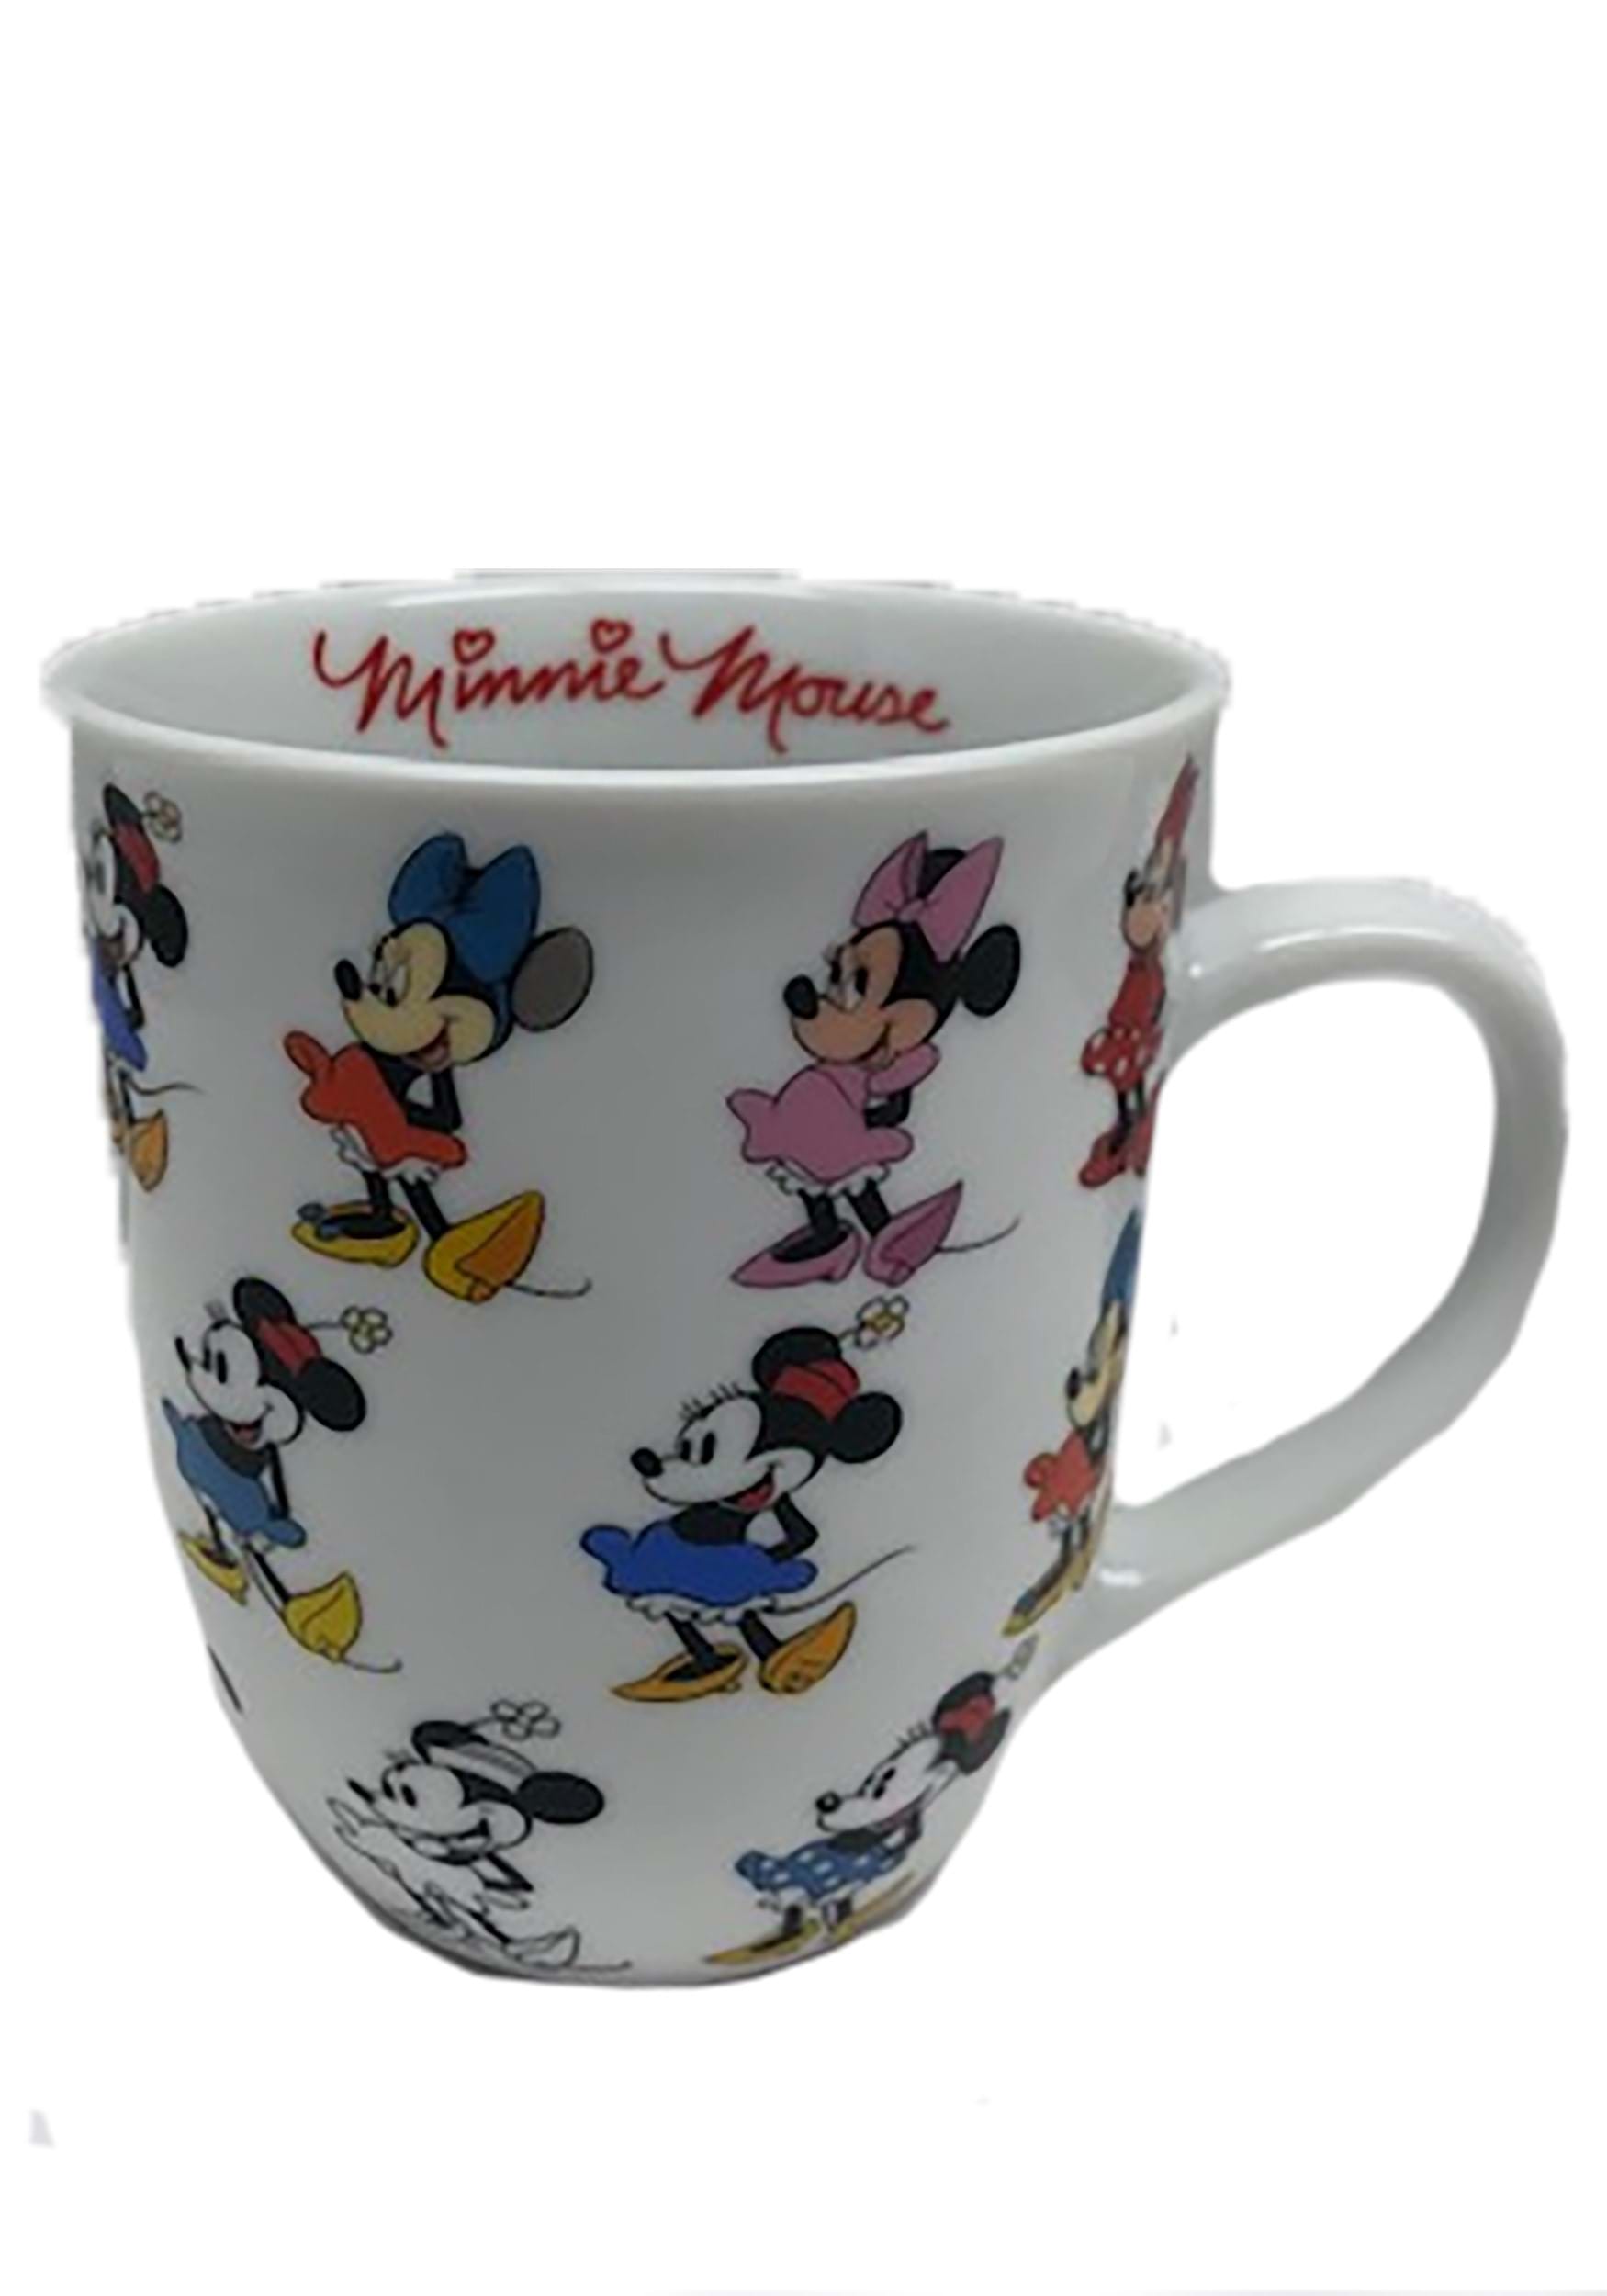 Disney Minnie Mouse Cafe Soup Mug